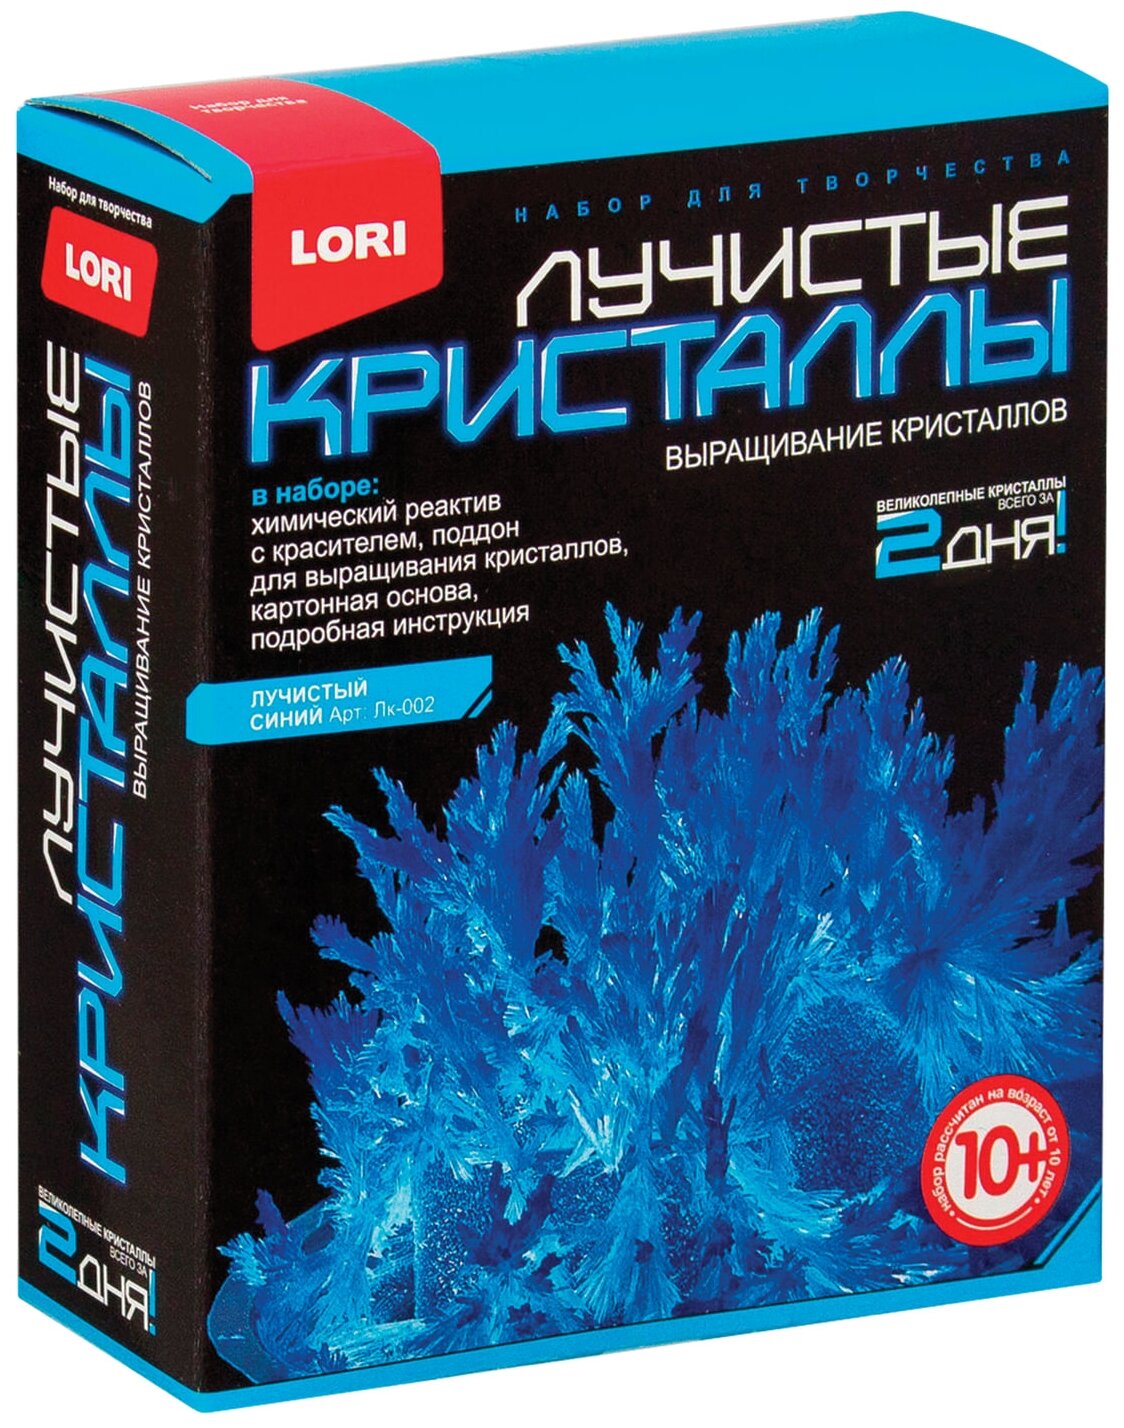 Набор для изготовления лучистых кристаллов "Синий кристалл", реагент, краситель, основа, LORI, Лк-002